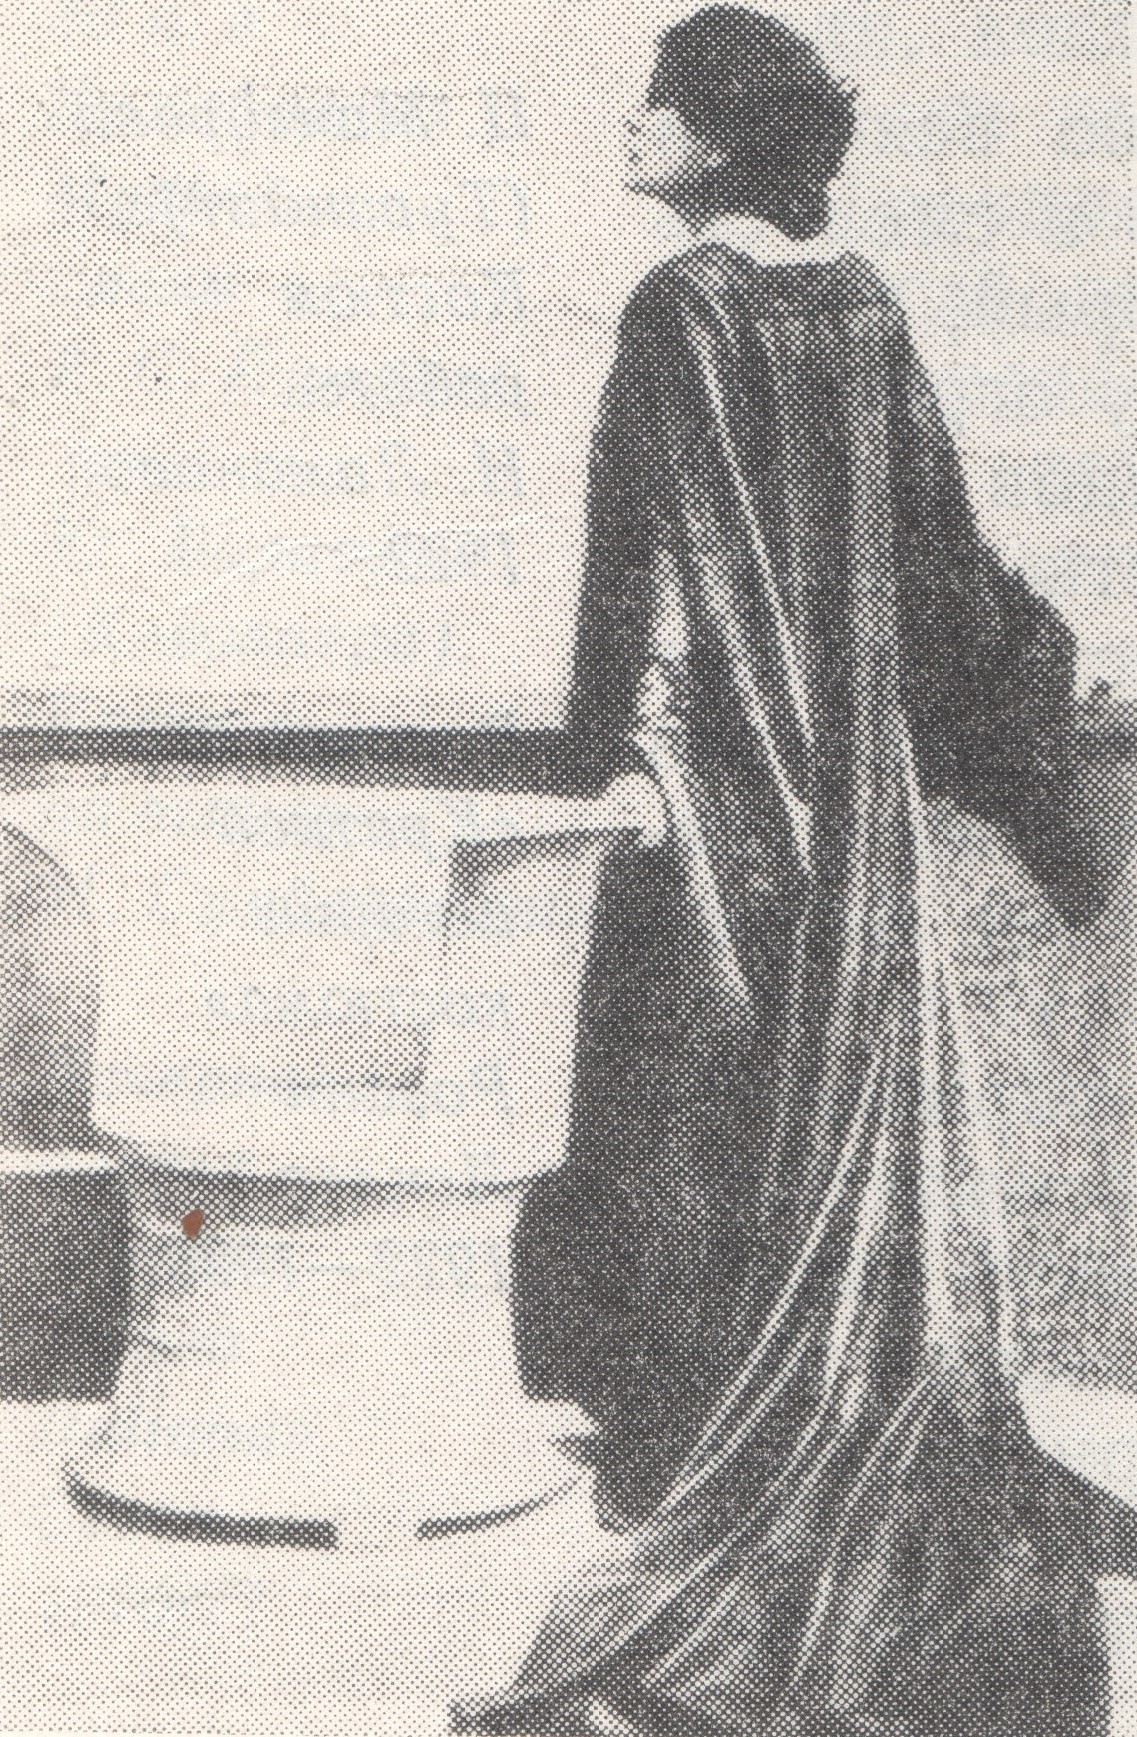 Элеонора Дузе в спектакле «Мертвый город» Д’Аннунцио. Костюм по эскизу Жана Ворта 1898